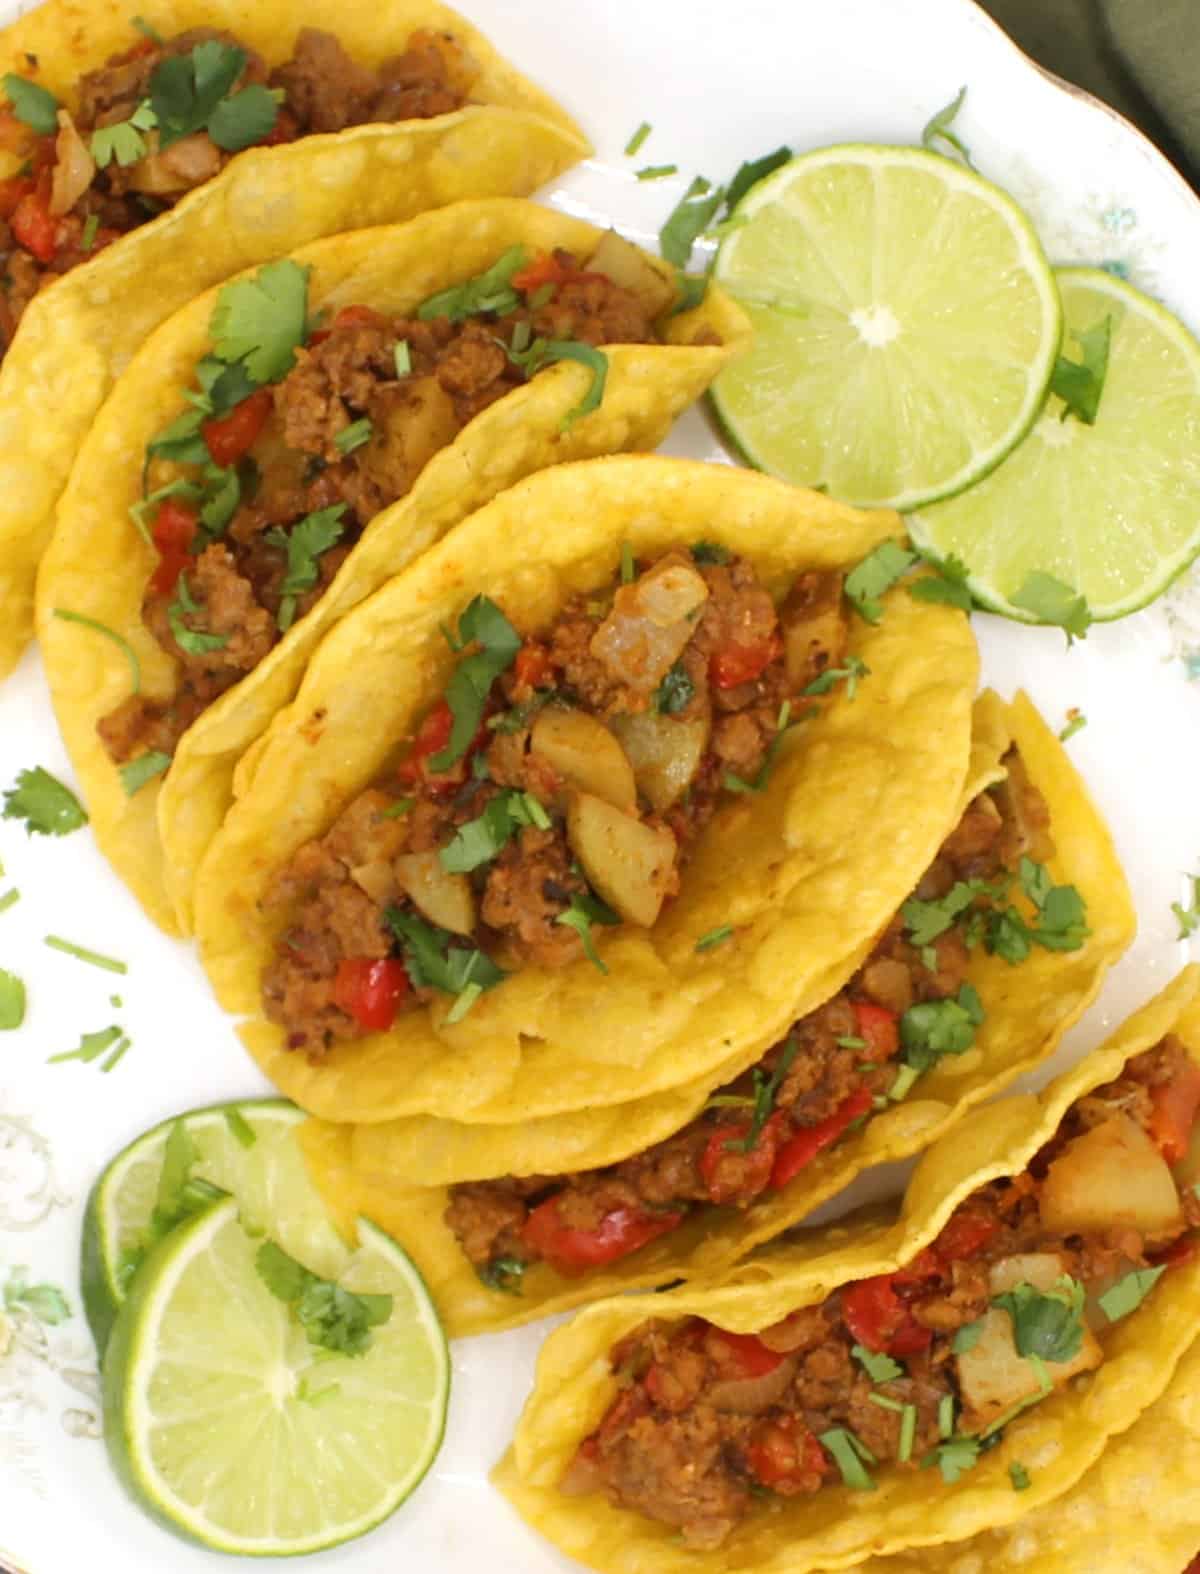 Taco picadillo sur une plaque blanche avec des tranches de citron vert.